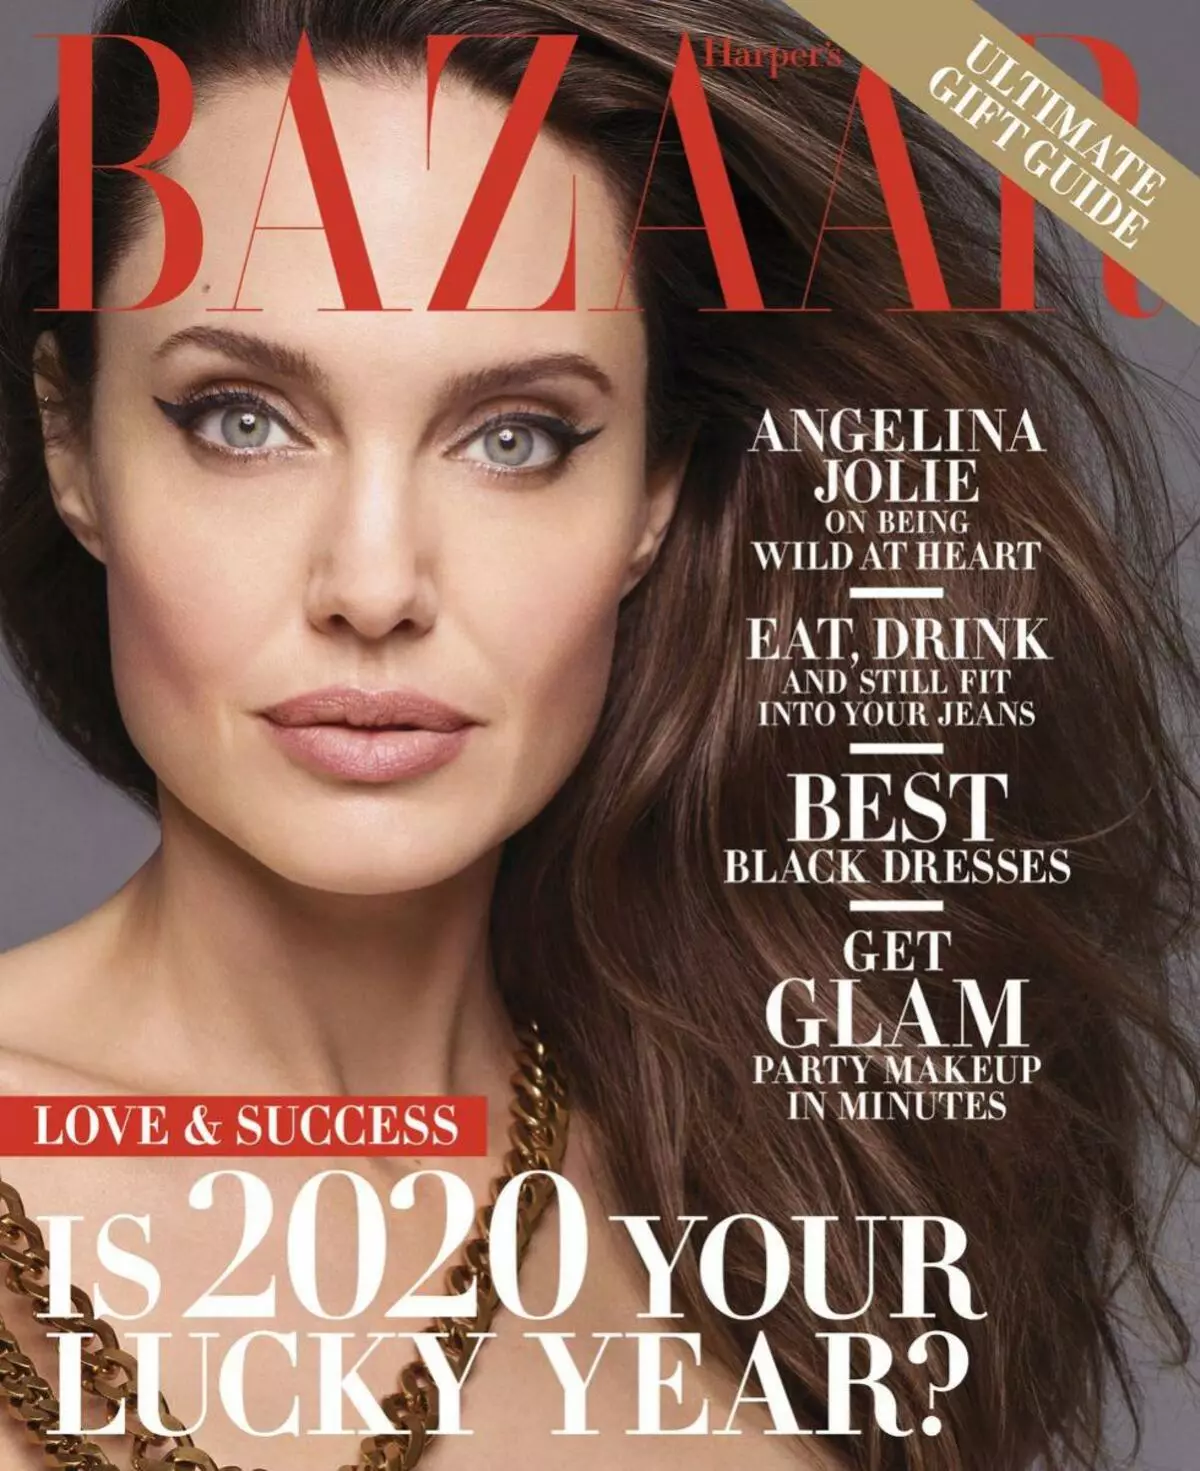 44-jarige Angelina Jolie het naak vir Harper's Bazaar gespeel: 